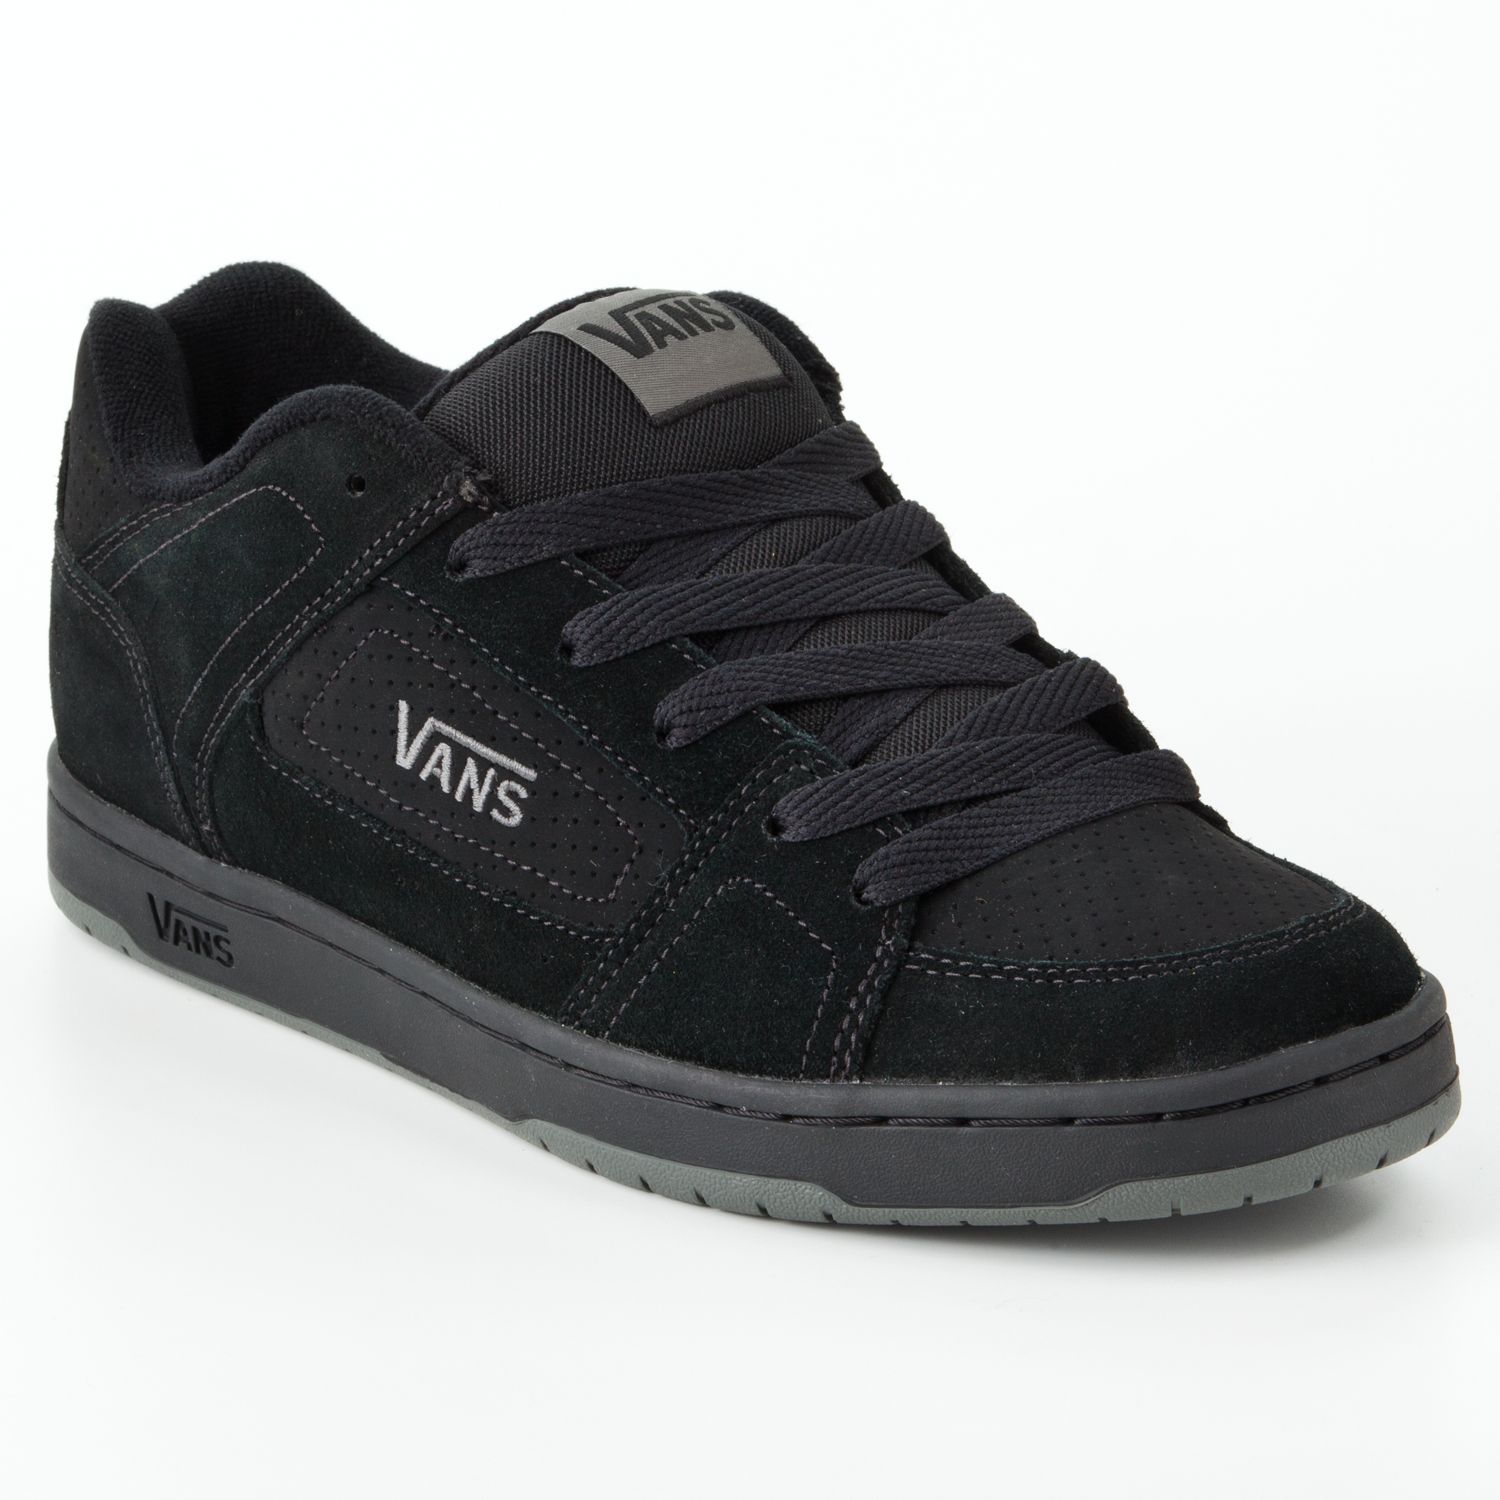 Vans Adder Skate Shoes - Men